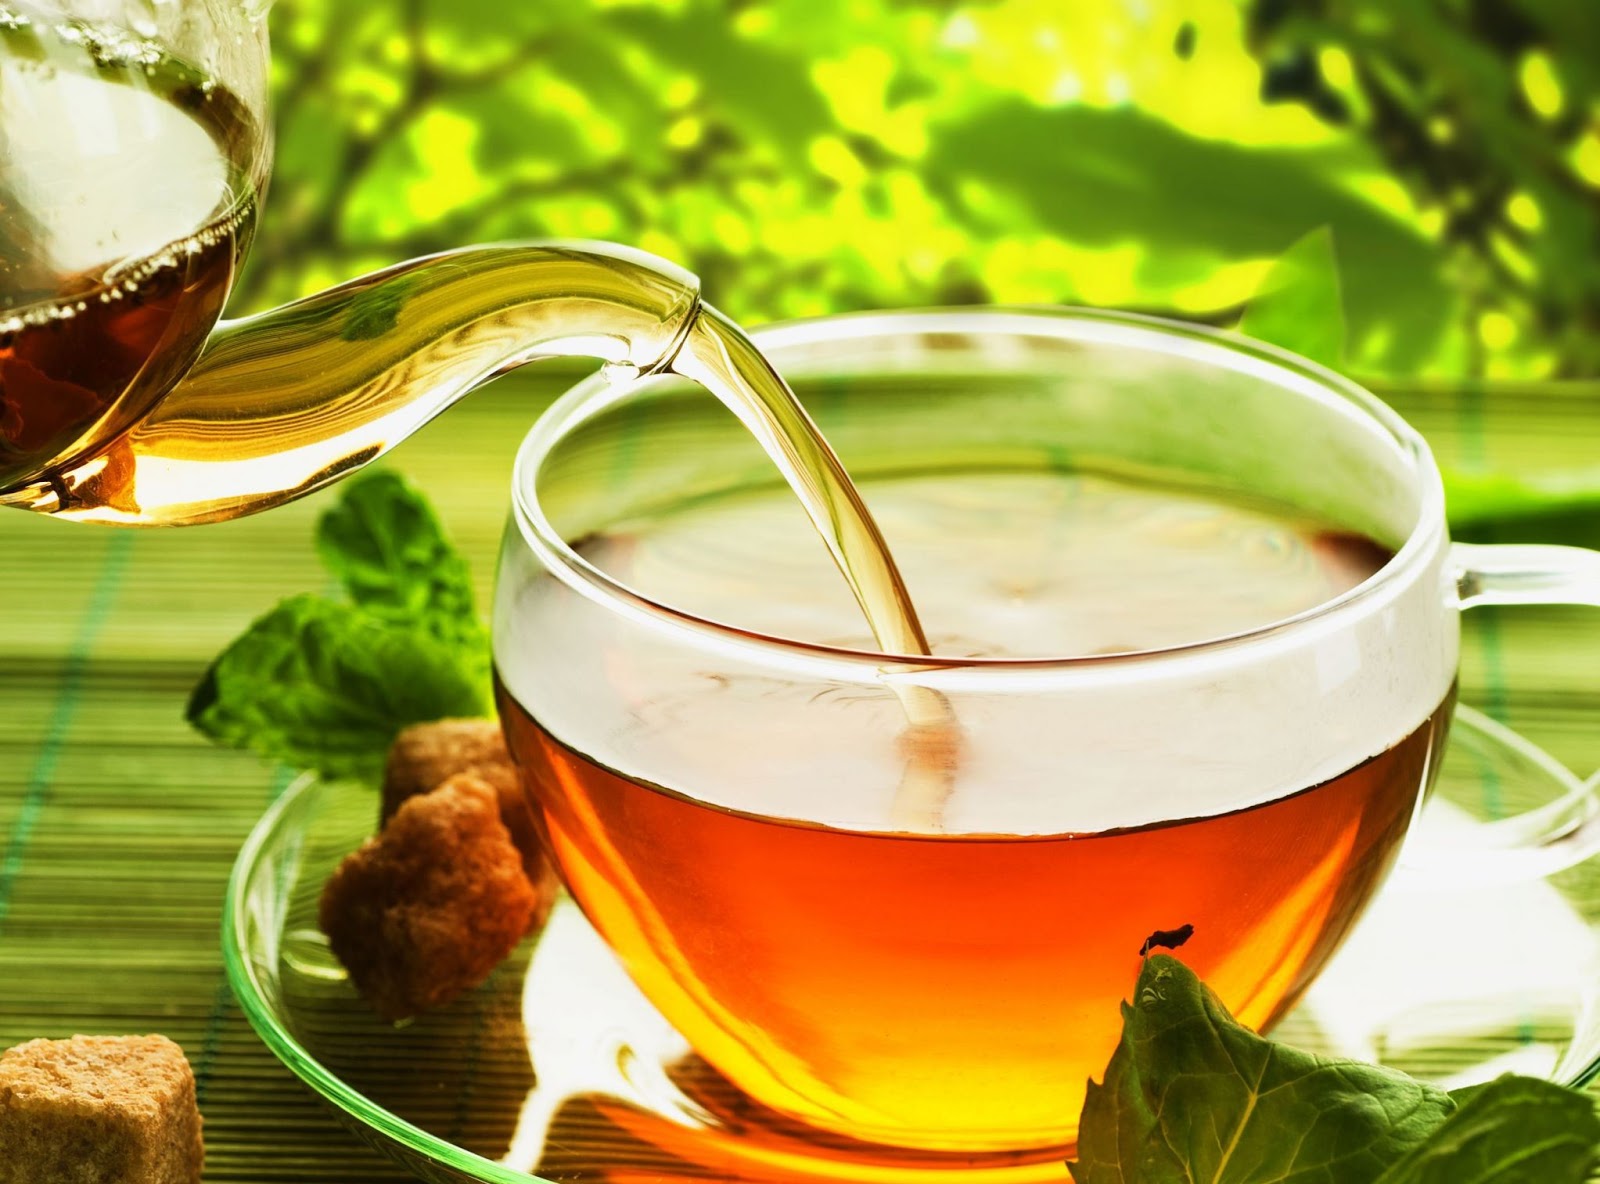  الشاي الأخضر وأهم فوائده الصحية1